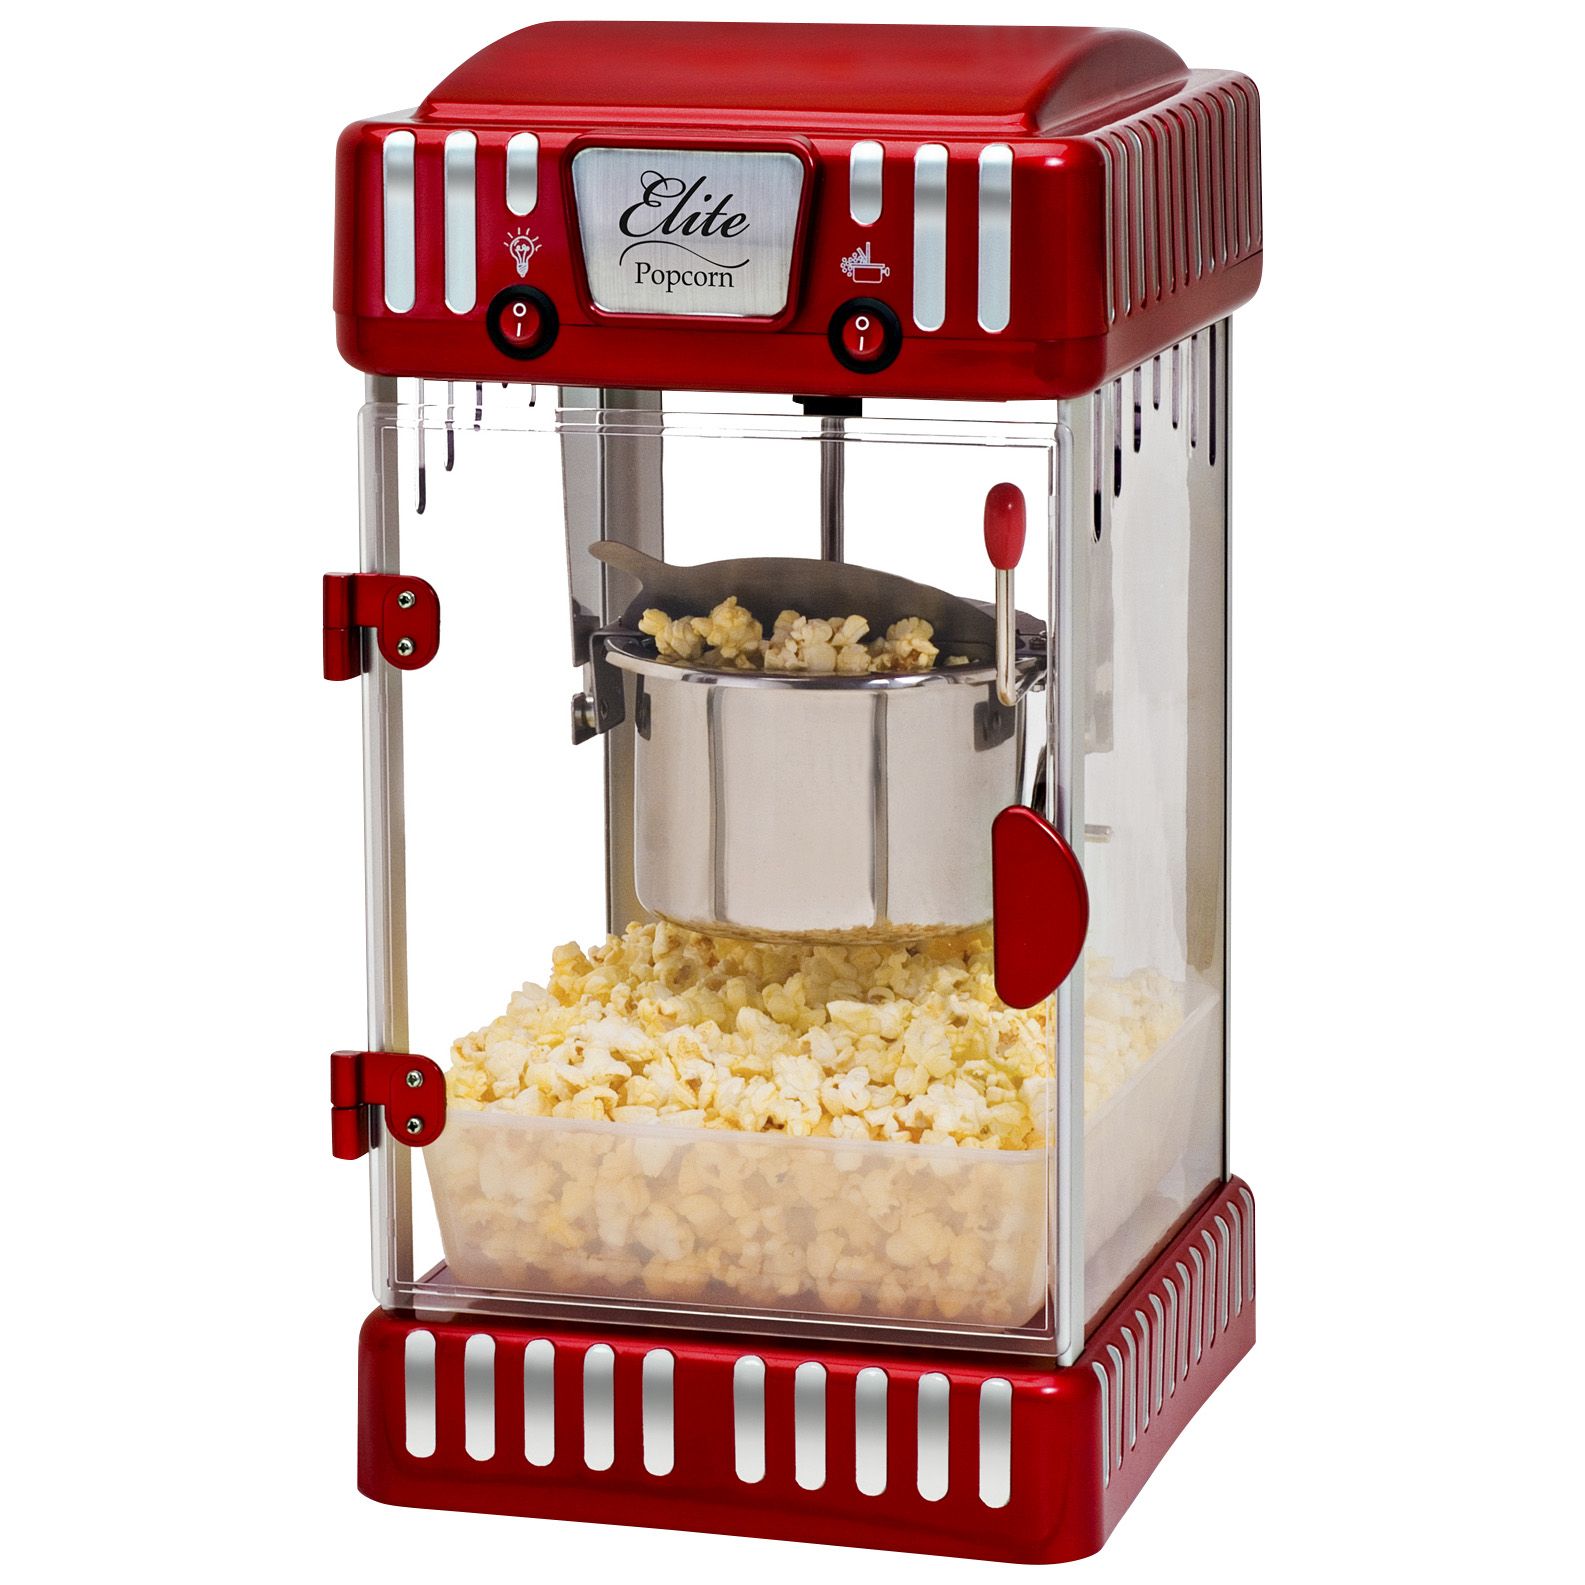 Fingerhut - Elite Kettle Popcorn Maker